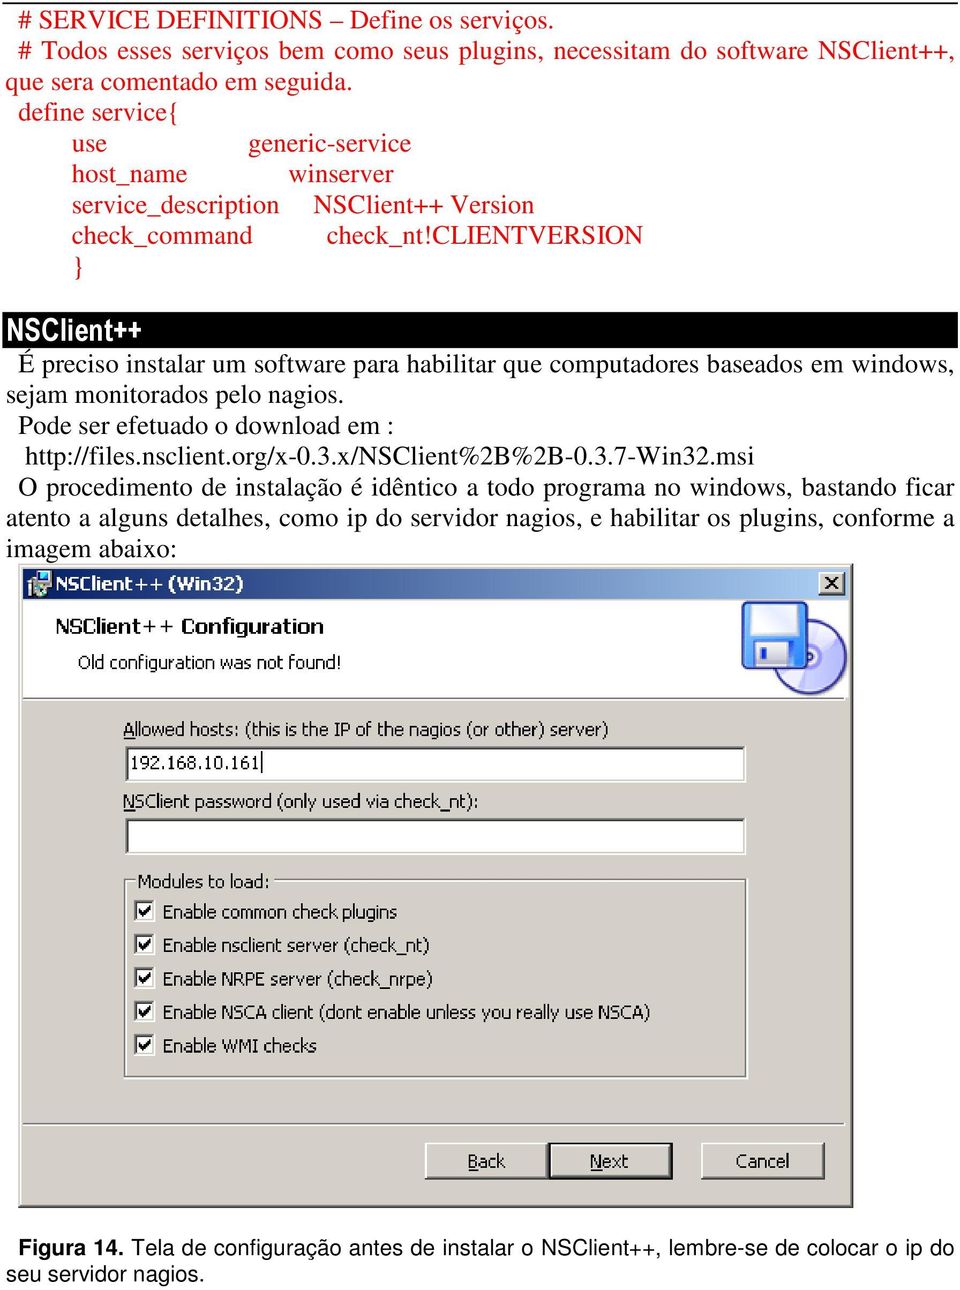 clientversion NSClient++ É preciso instalar um software para habilitar que computadores baseados em windows, sejam monitorados pelo nagios. Pode ser efetuado o download em : http://files.nsclient.